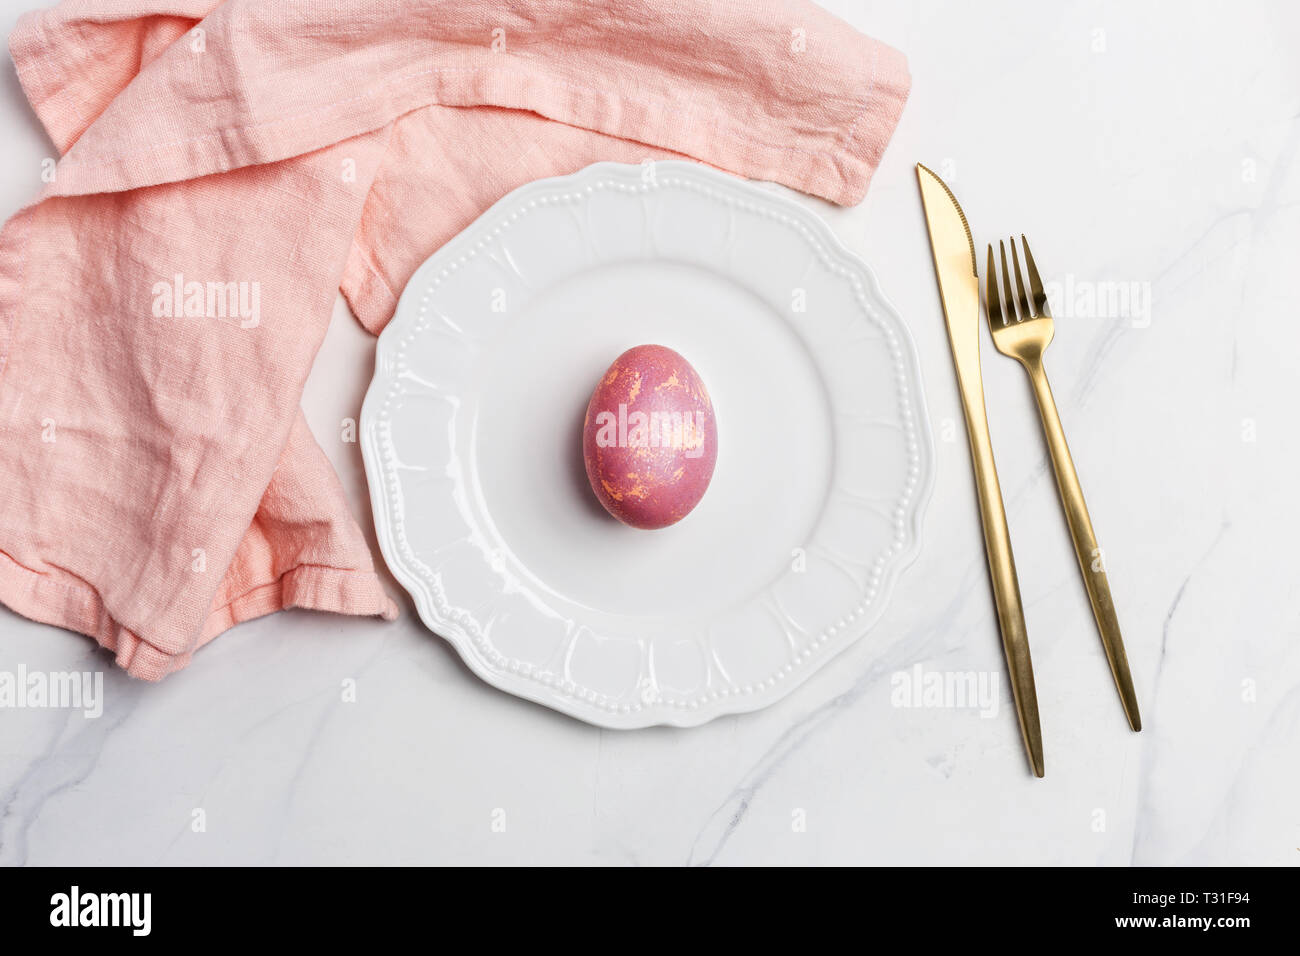 Table de Pâques, place. Œuf de Pâques, peint de couleur rose dans une assiette blanche, rose, serviette de table d'or sur fond de marbre blanc, horizontal, co Banque D'Images